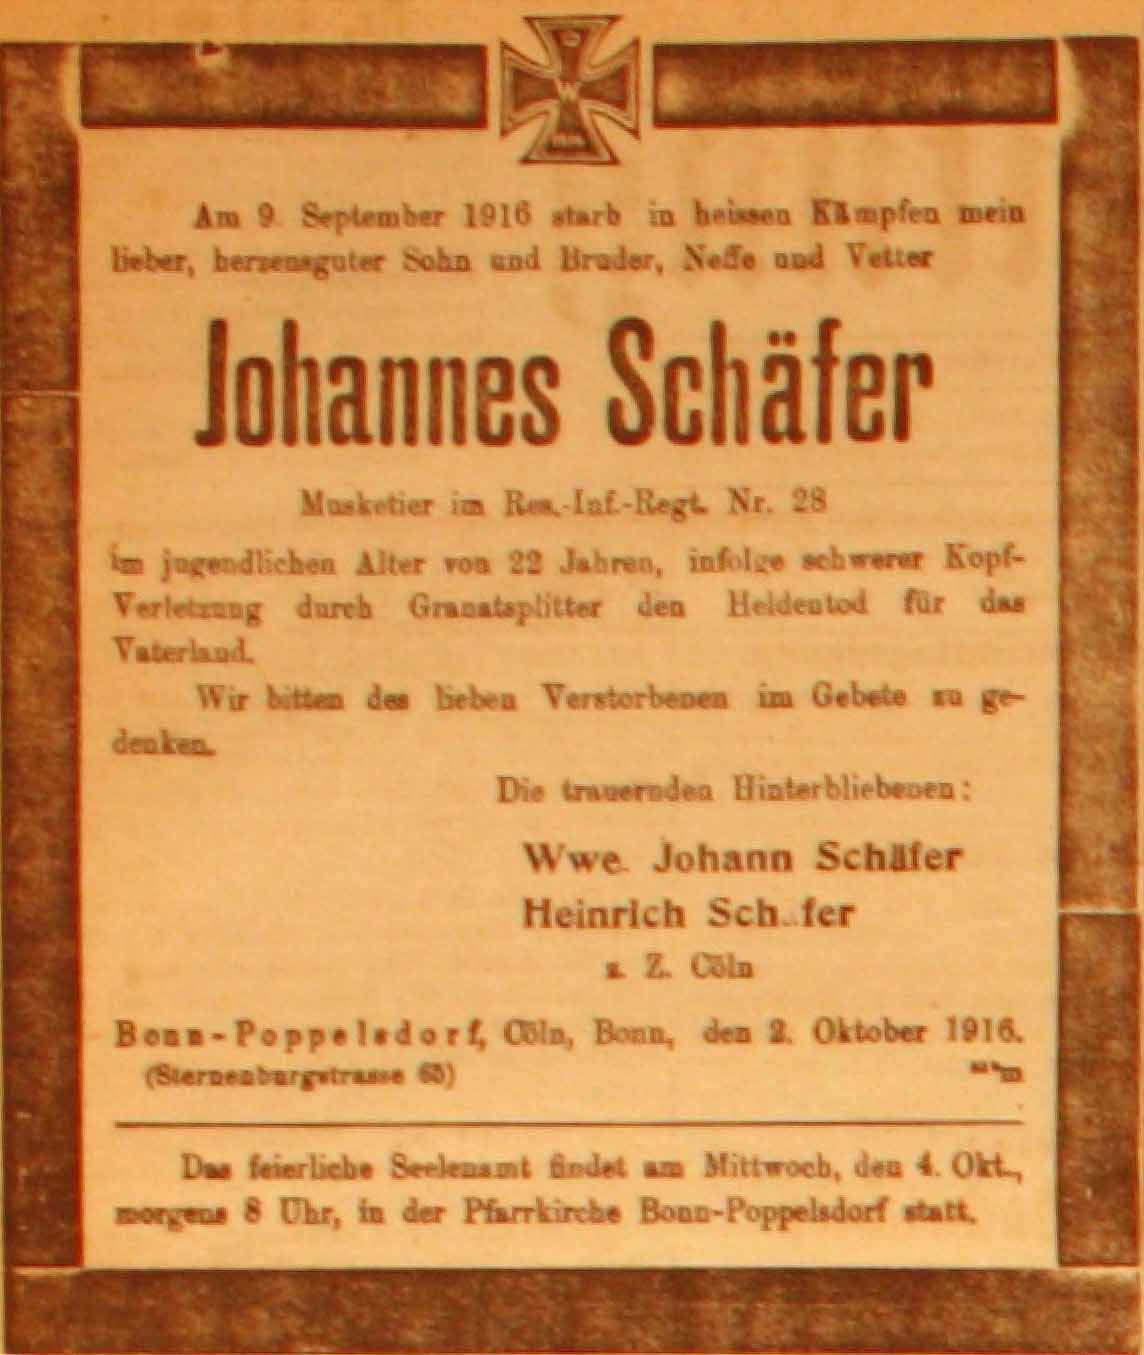 Anzeige in der Deutschen Reichs-Zeitung vom 3. Oktober 1916